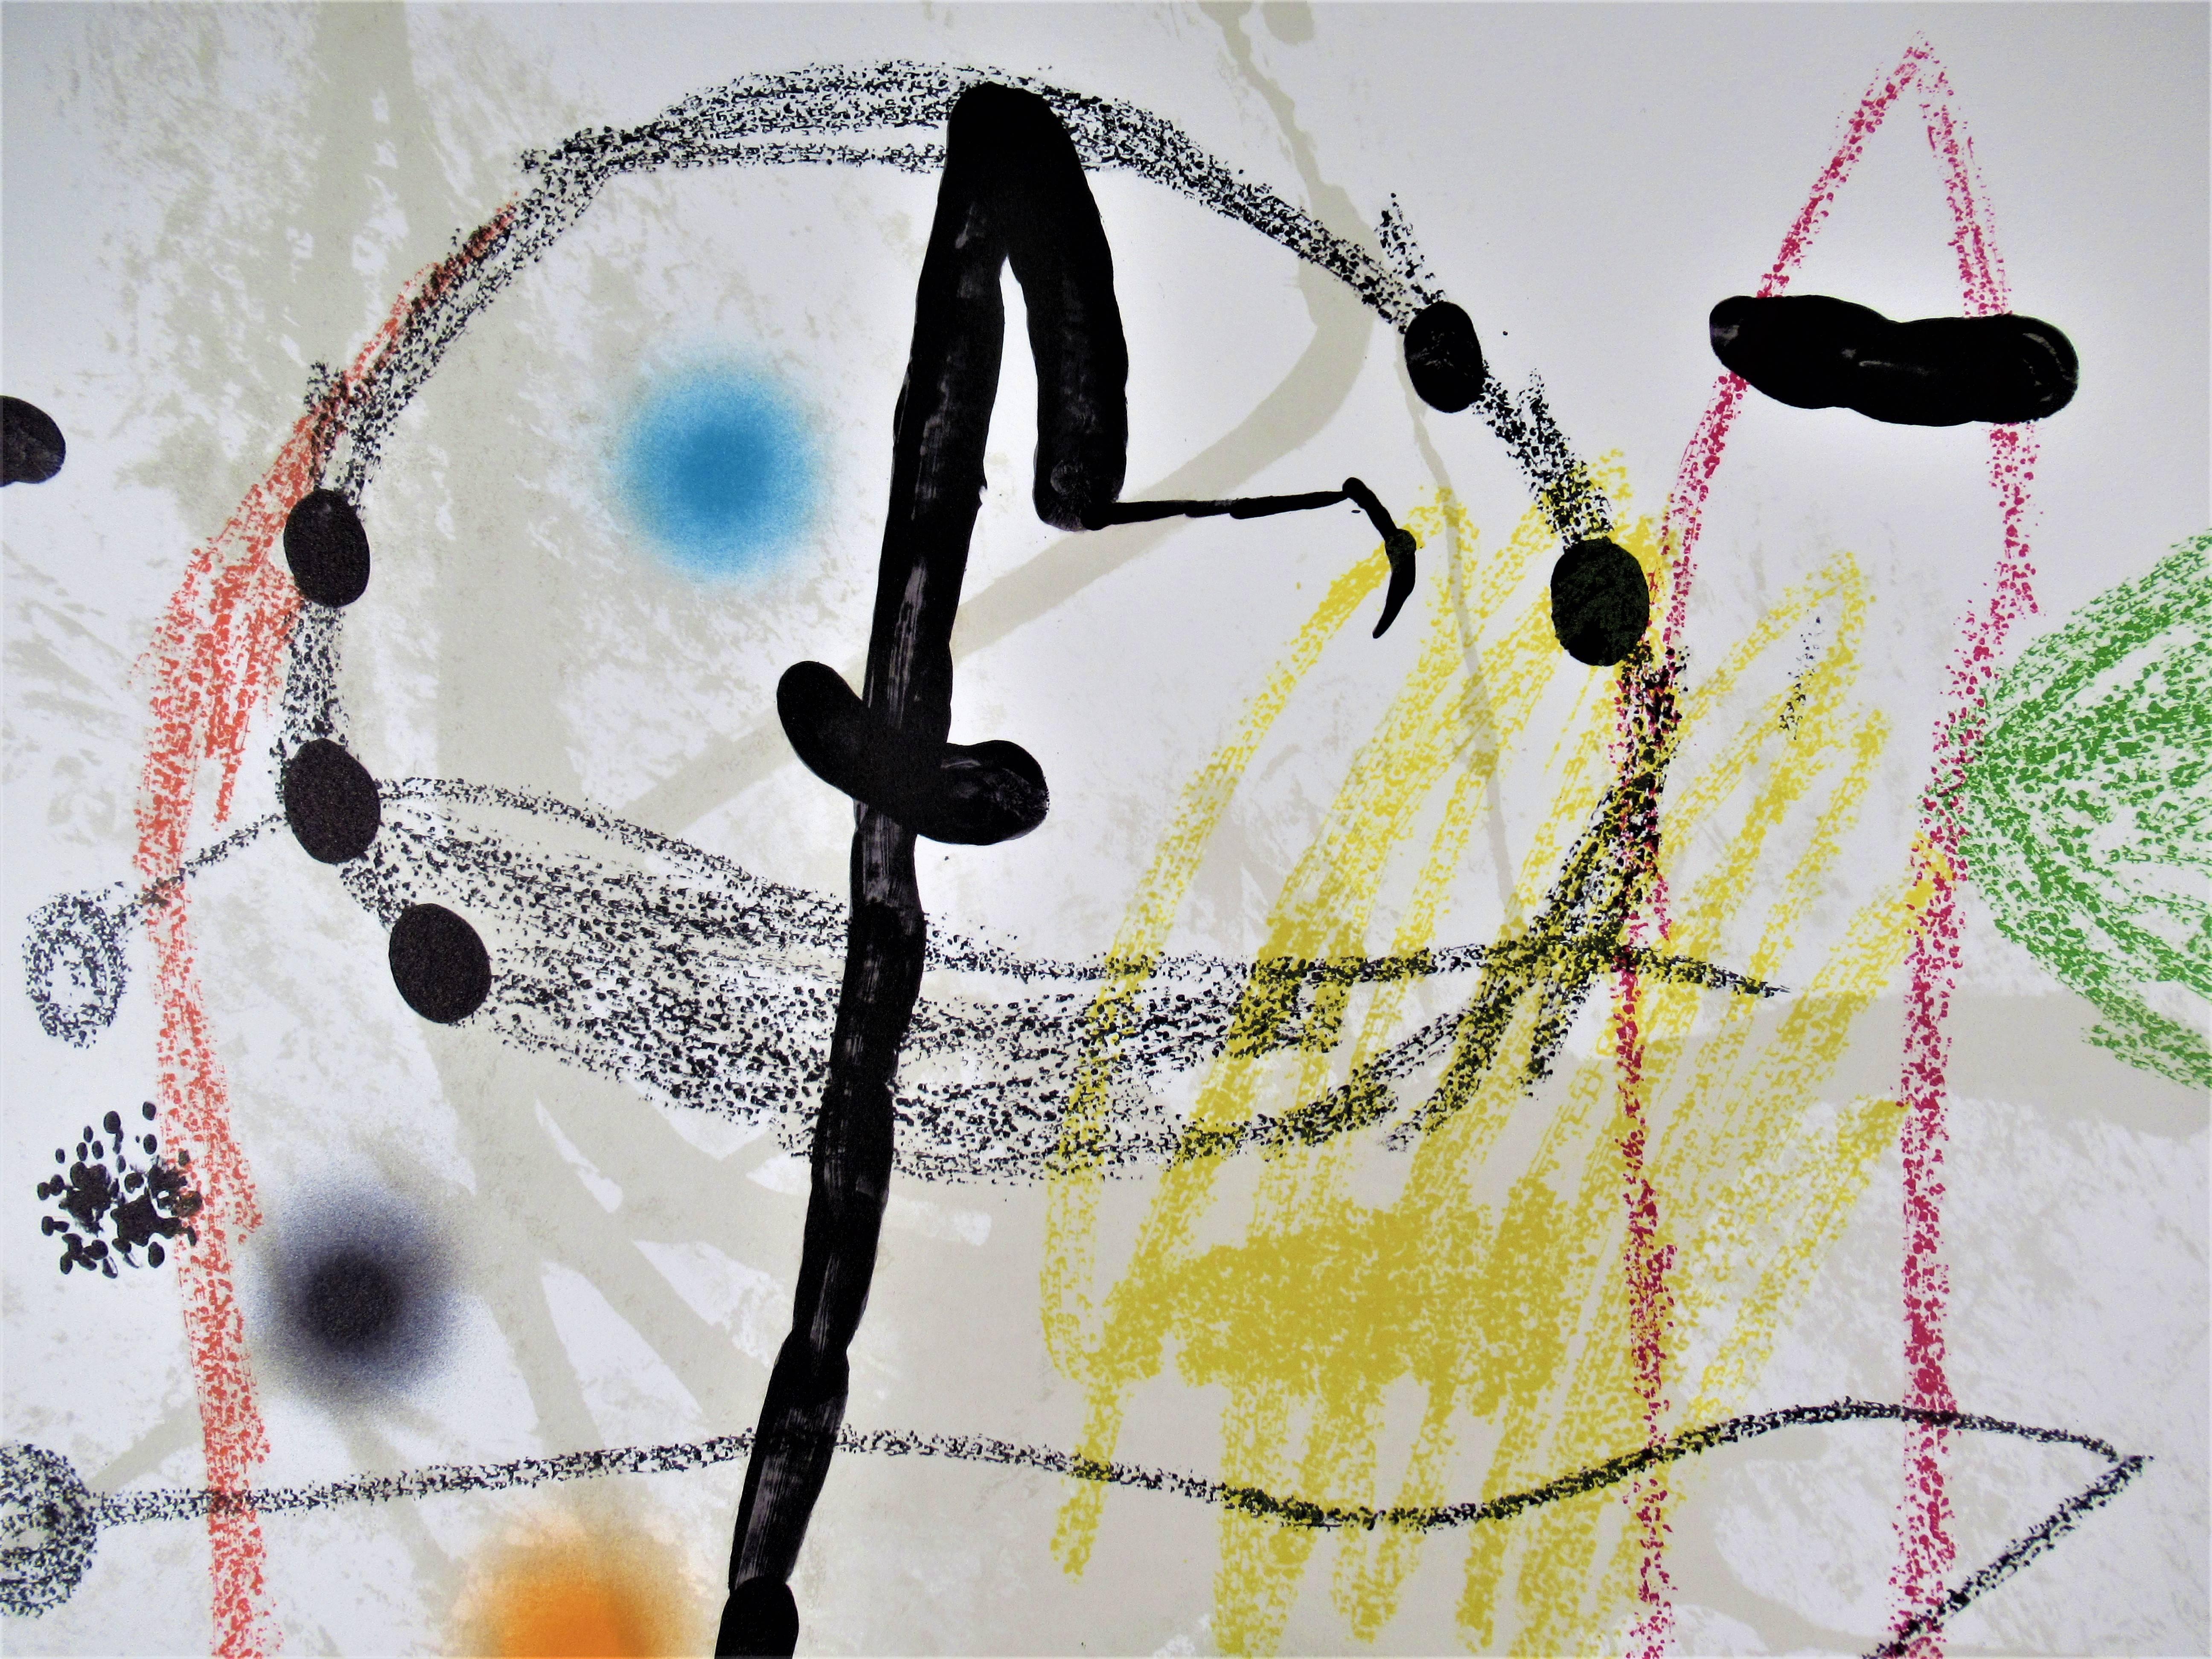 Maravillas Con Variations Acrosticas en el Jardin de Miro - Print by Joan Miró